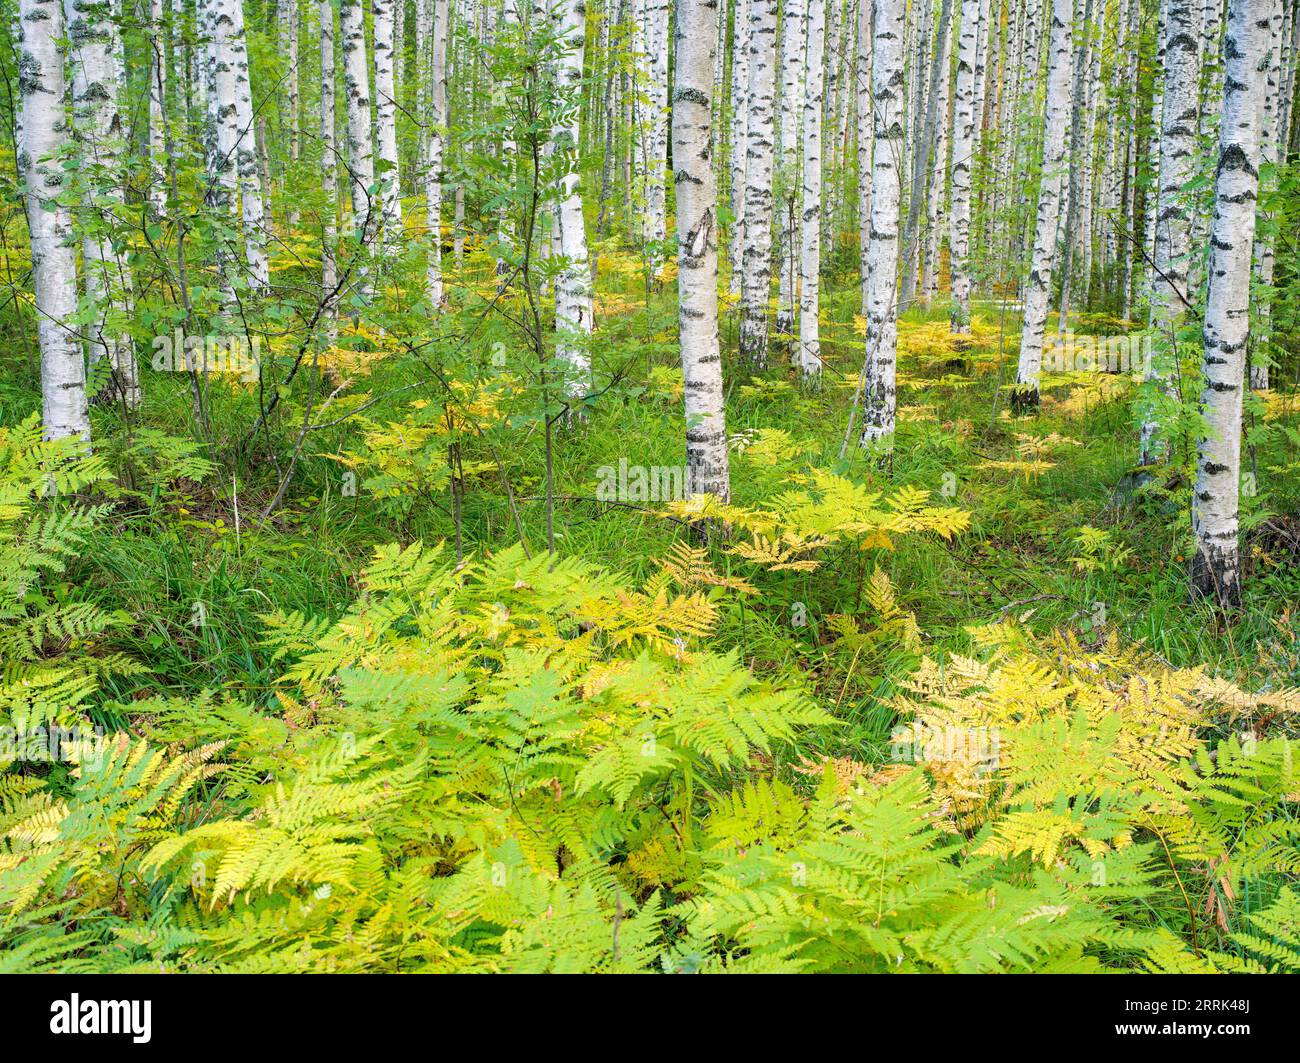 Birches and ferns near Ristiina, Saimaa, Finland Stock Photo